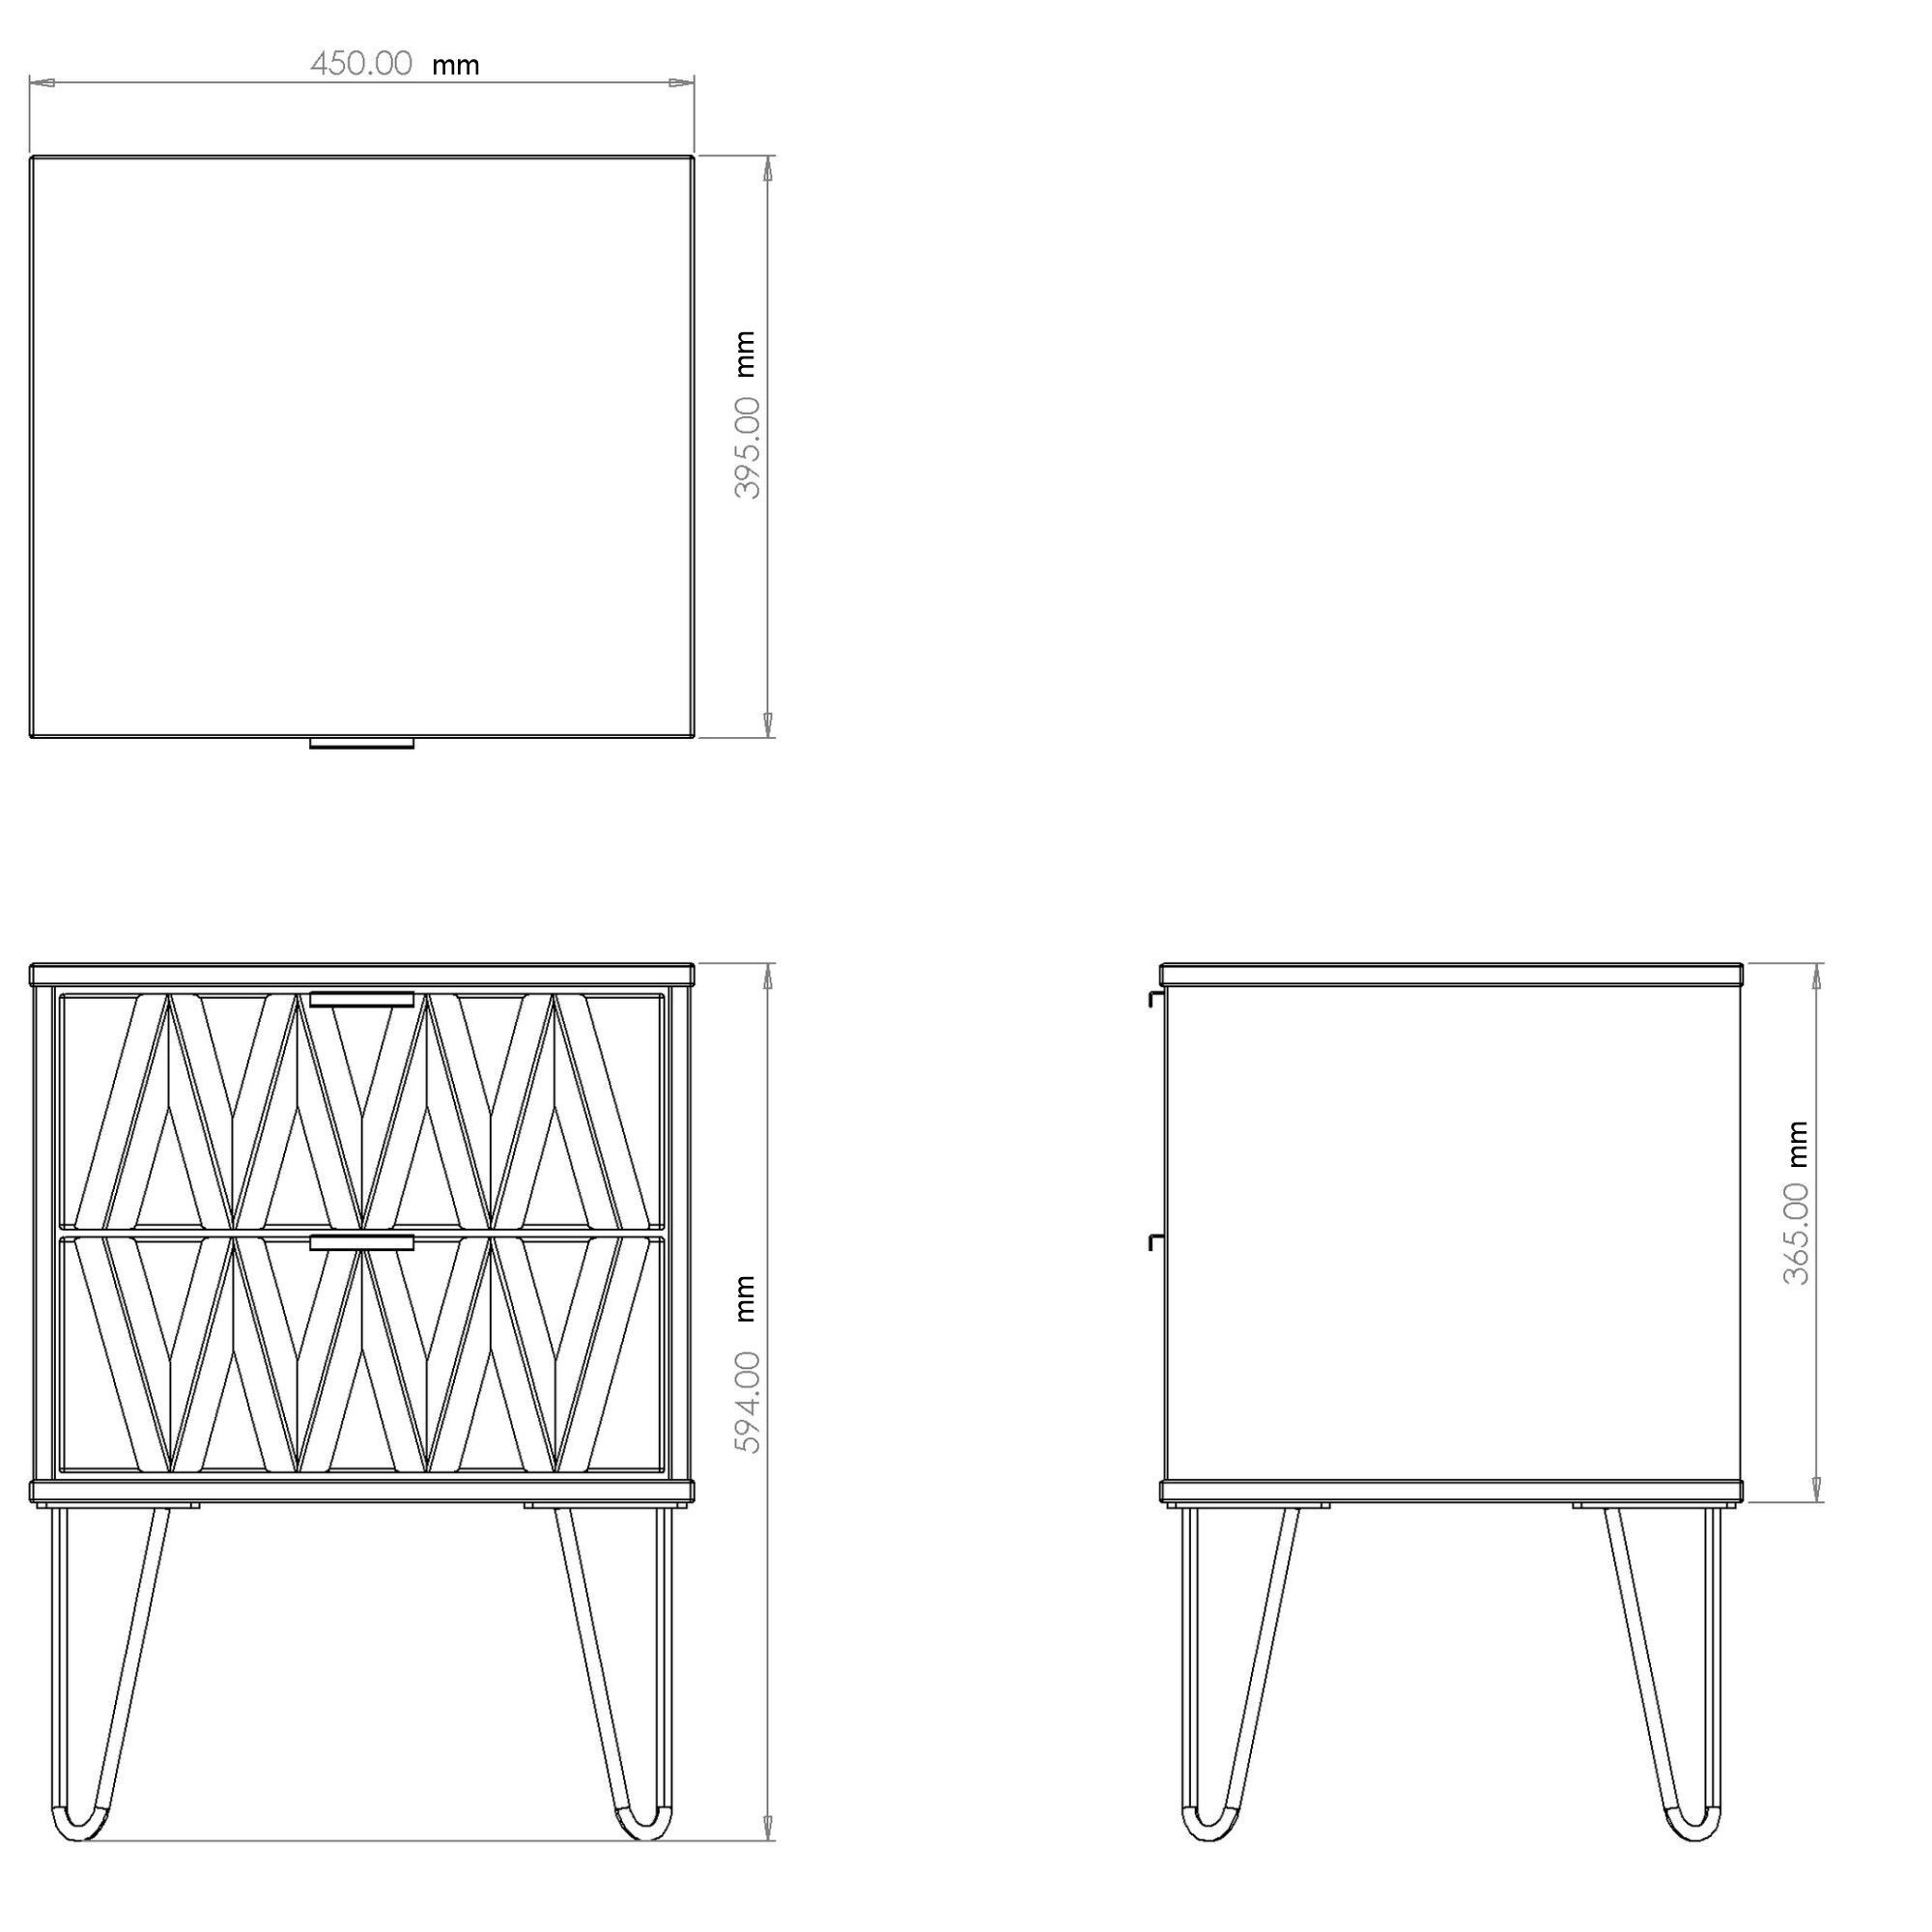 Linear Ready assembled Matt dark grey 2 Drawer Bedside chest (H)505mm (W)395mm (D)415mm